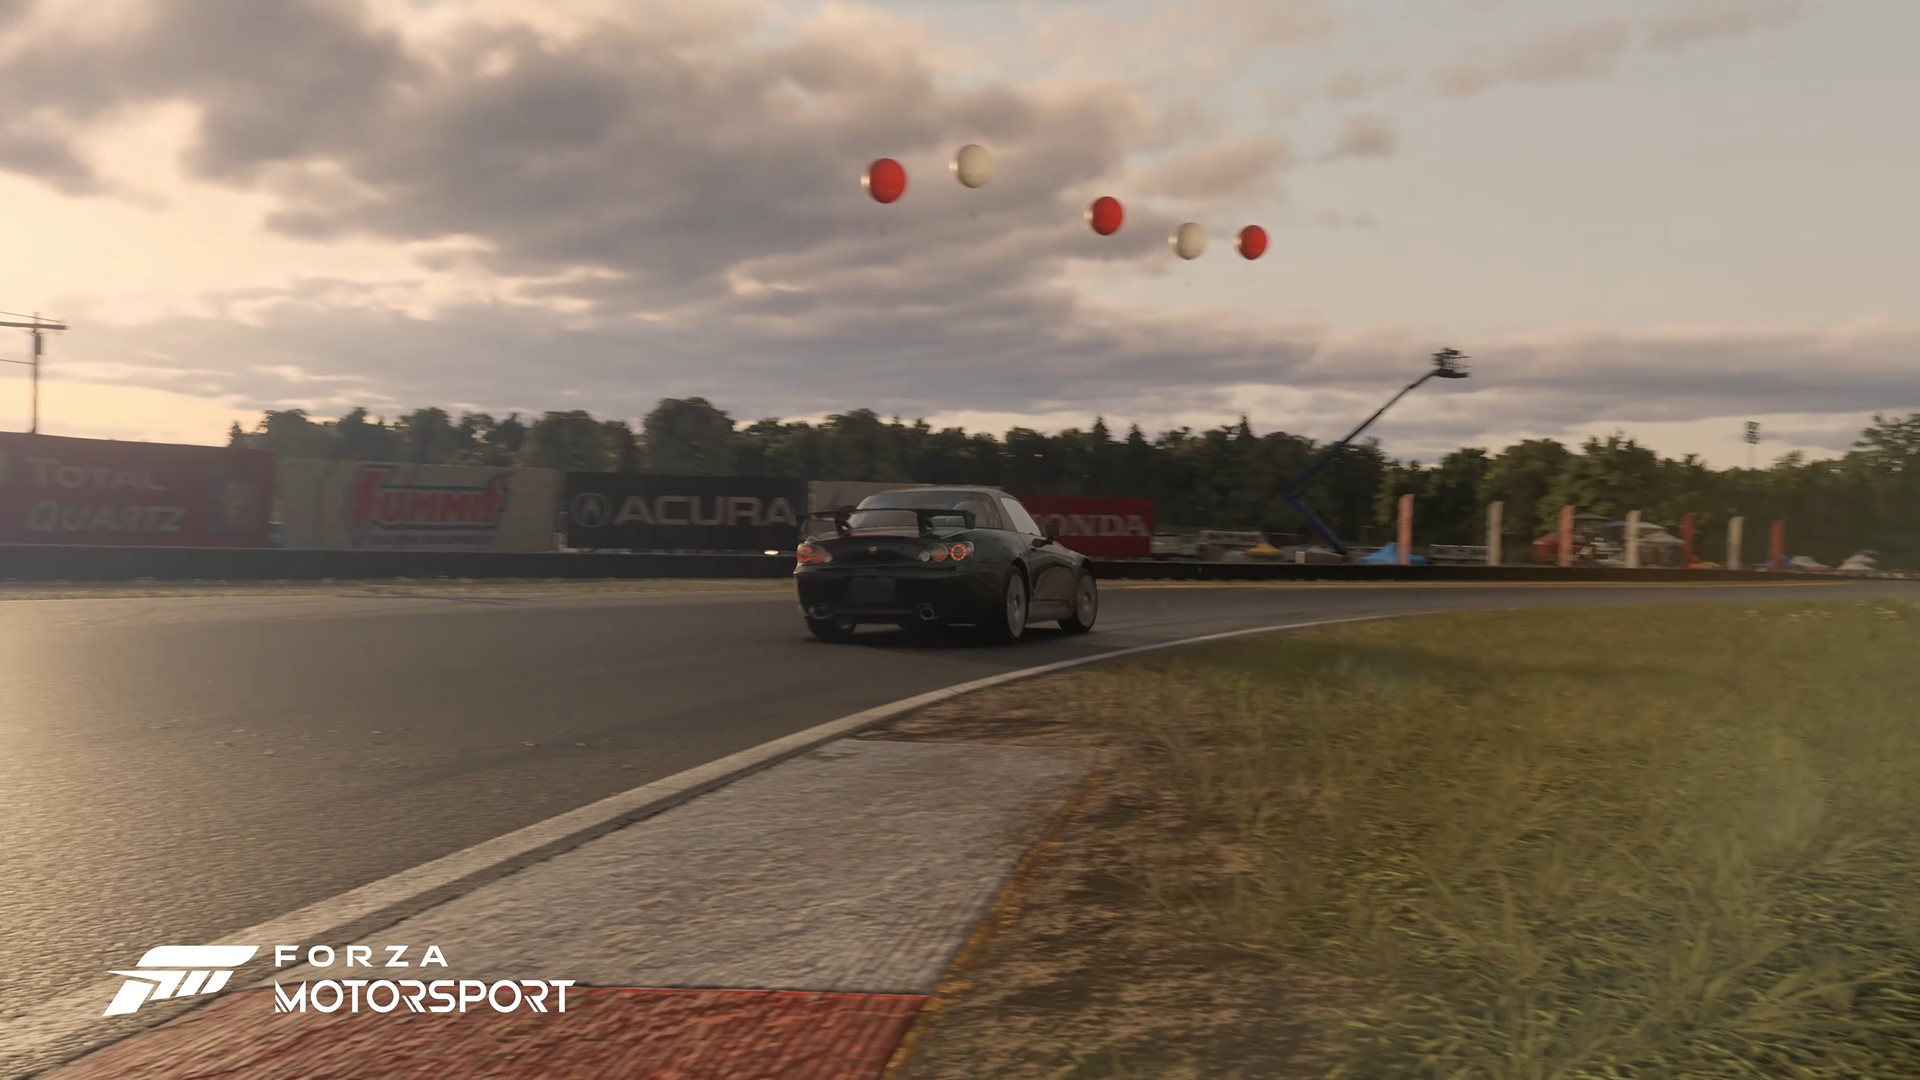 از پیست Mid-Ohio در بازی Forza Motorsport رونمایی شد